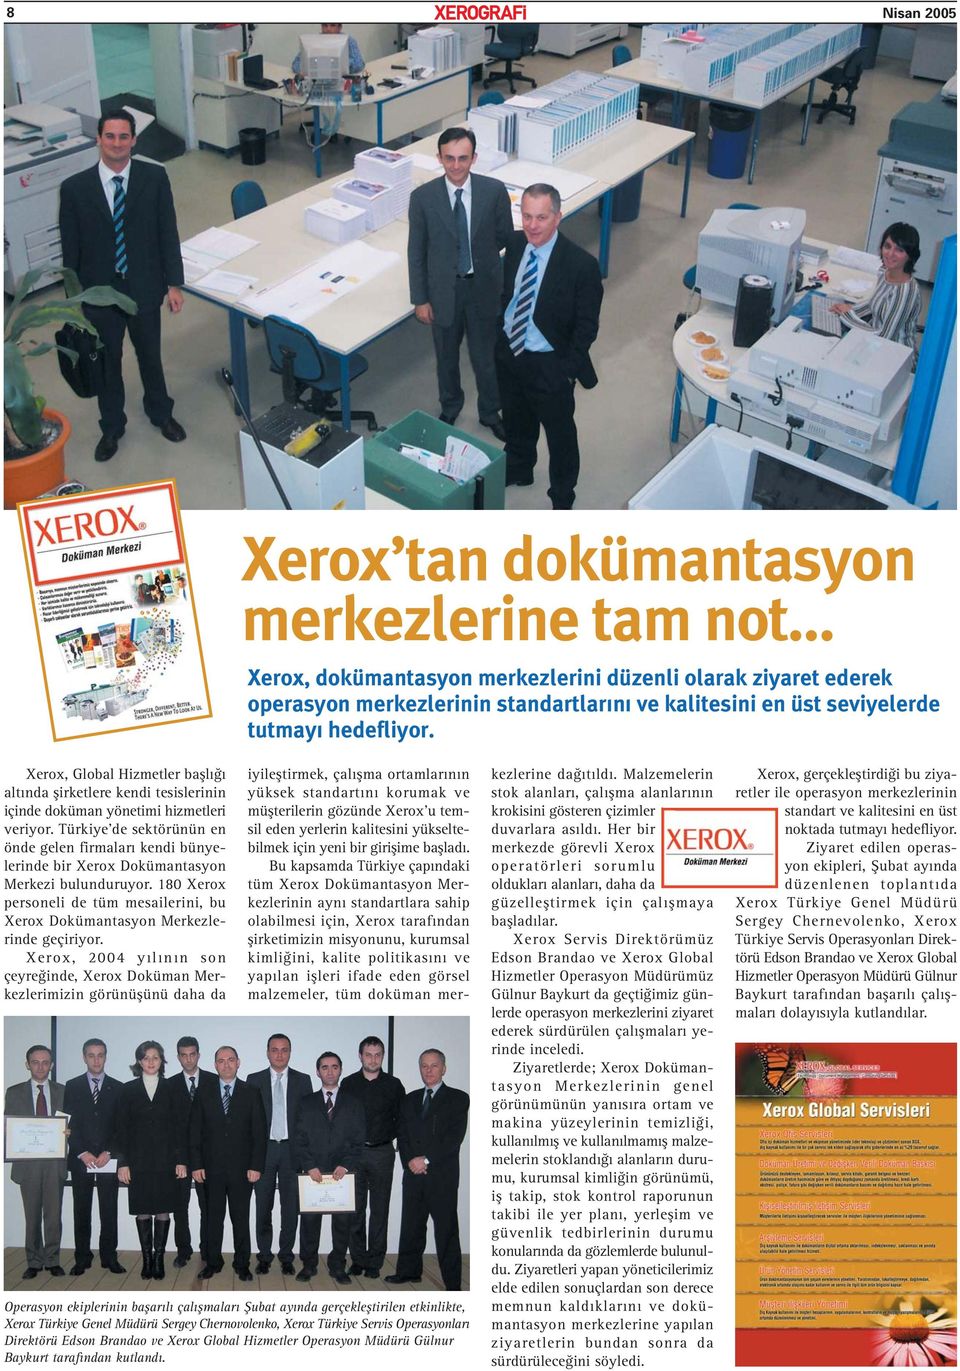 Türkiye de sektörünün en önde gelen firmaları kendi bünyelerinde bir Xerox Dokümantasyon Merkezi bulunduruyor. 180 Xerox personeli de tüm mesailerini, bu Xerox Dokümantasyon Merkezlerinde geçiriyor.